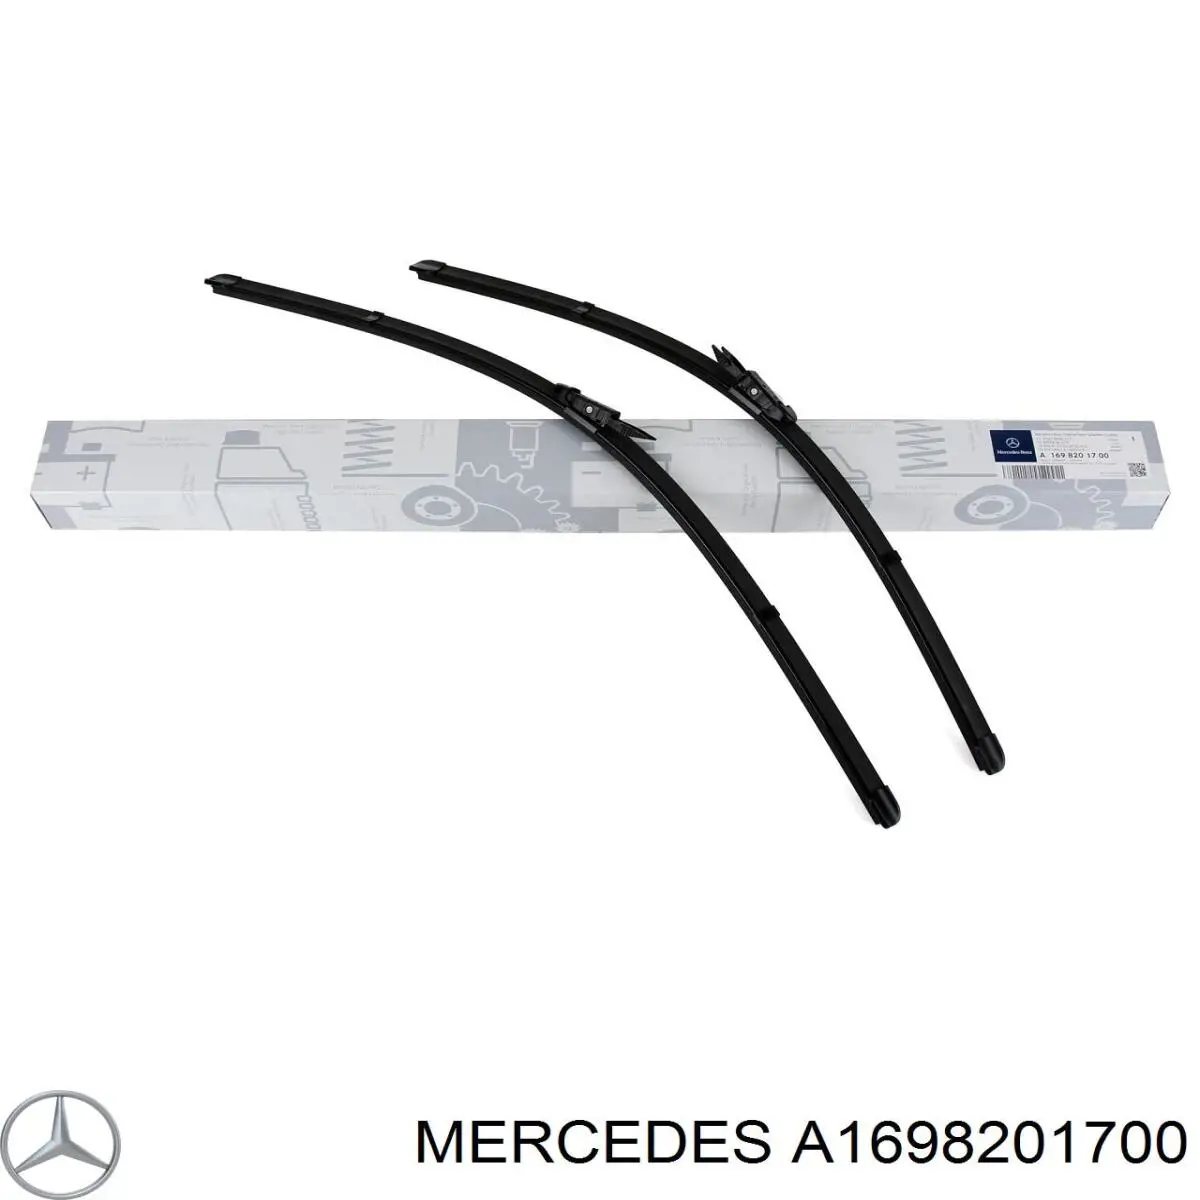 A1698201700 Mercedes щетка-дворник лобового стекла, комплект из 2 шт.